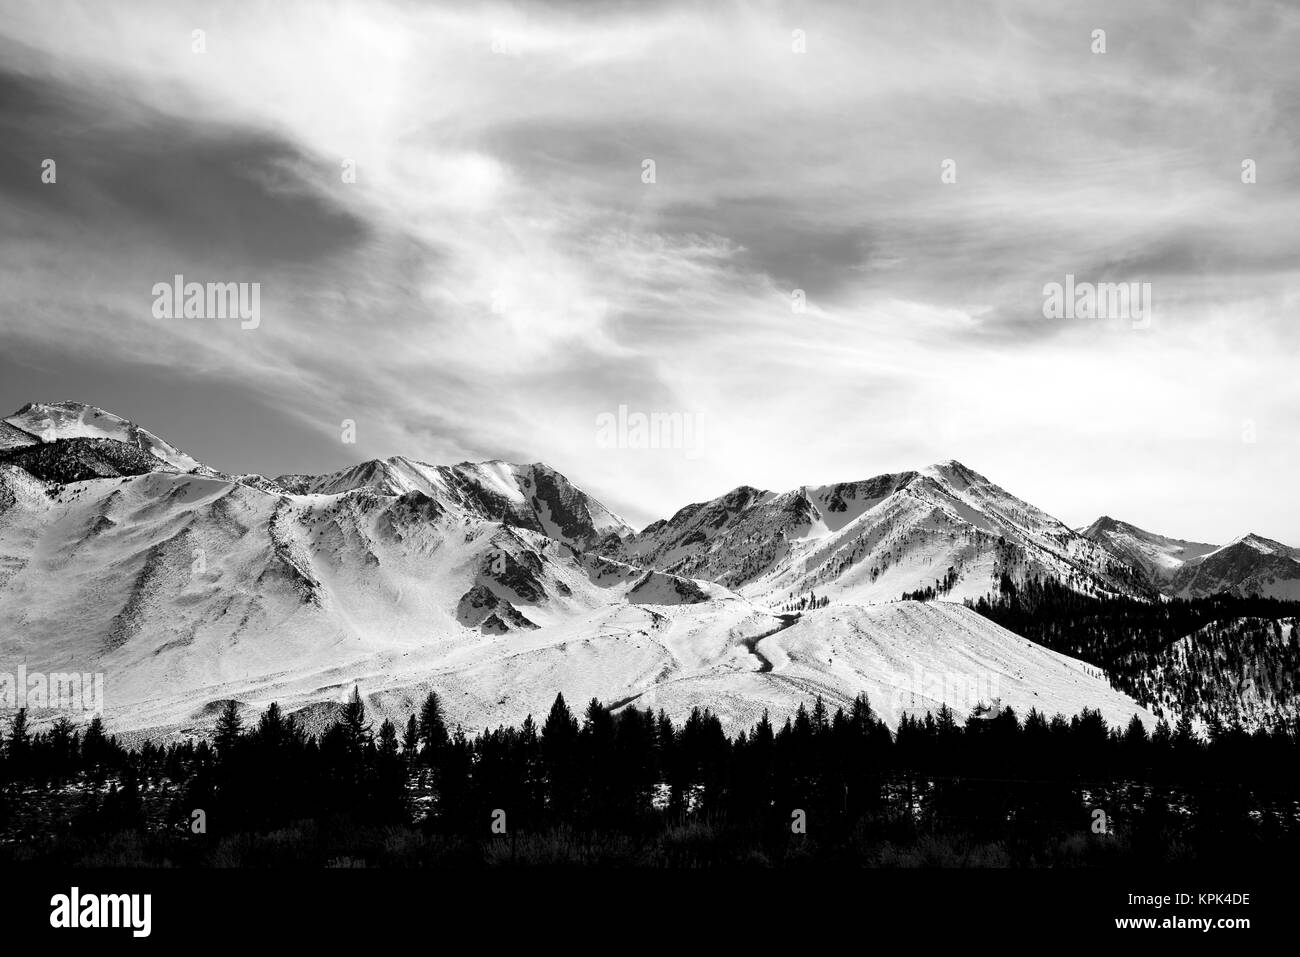 Image en noir et blanc d'une chaîne de montagnes couvertes de neige sous un ciel nuageux avec une forêt dans une vallée Banque D'Images